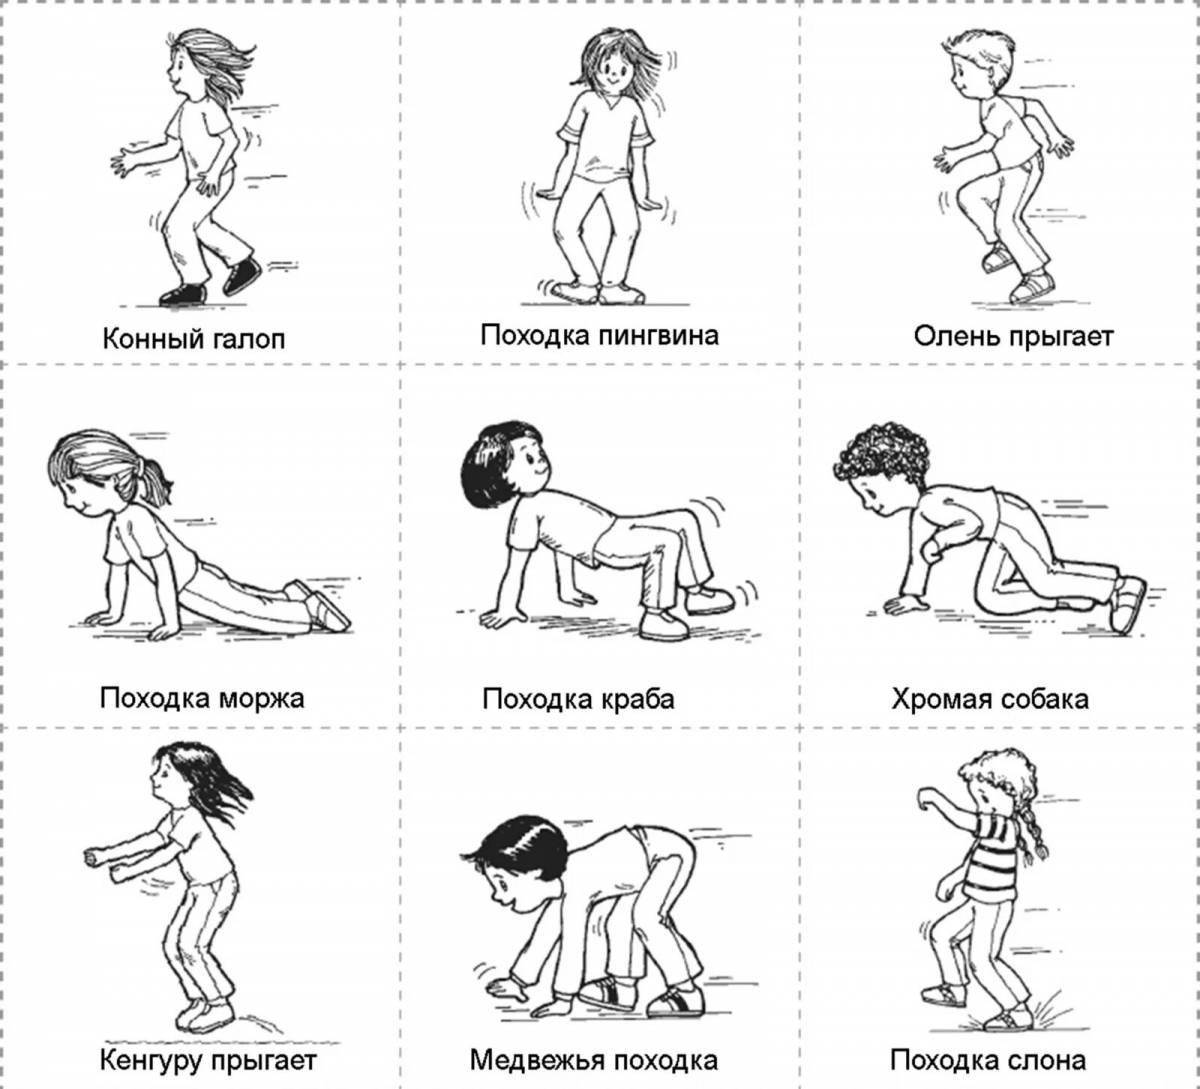 Exercise for children #9